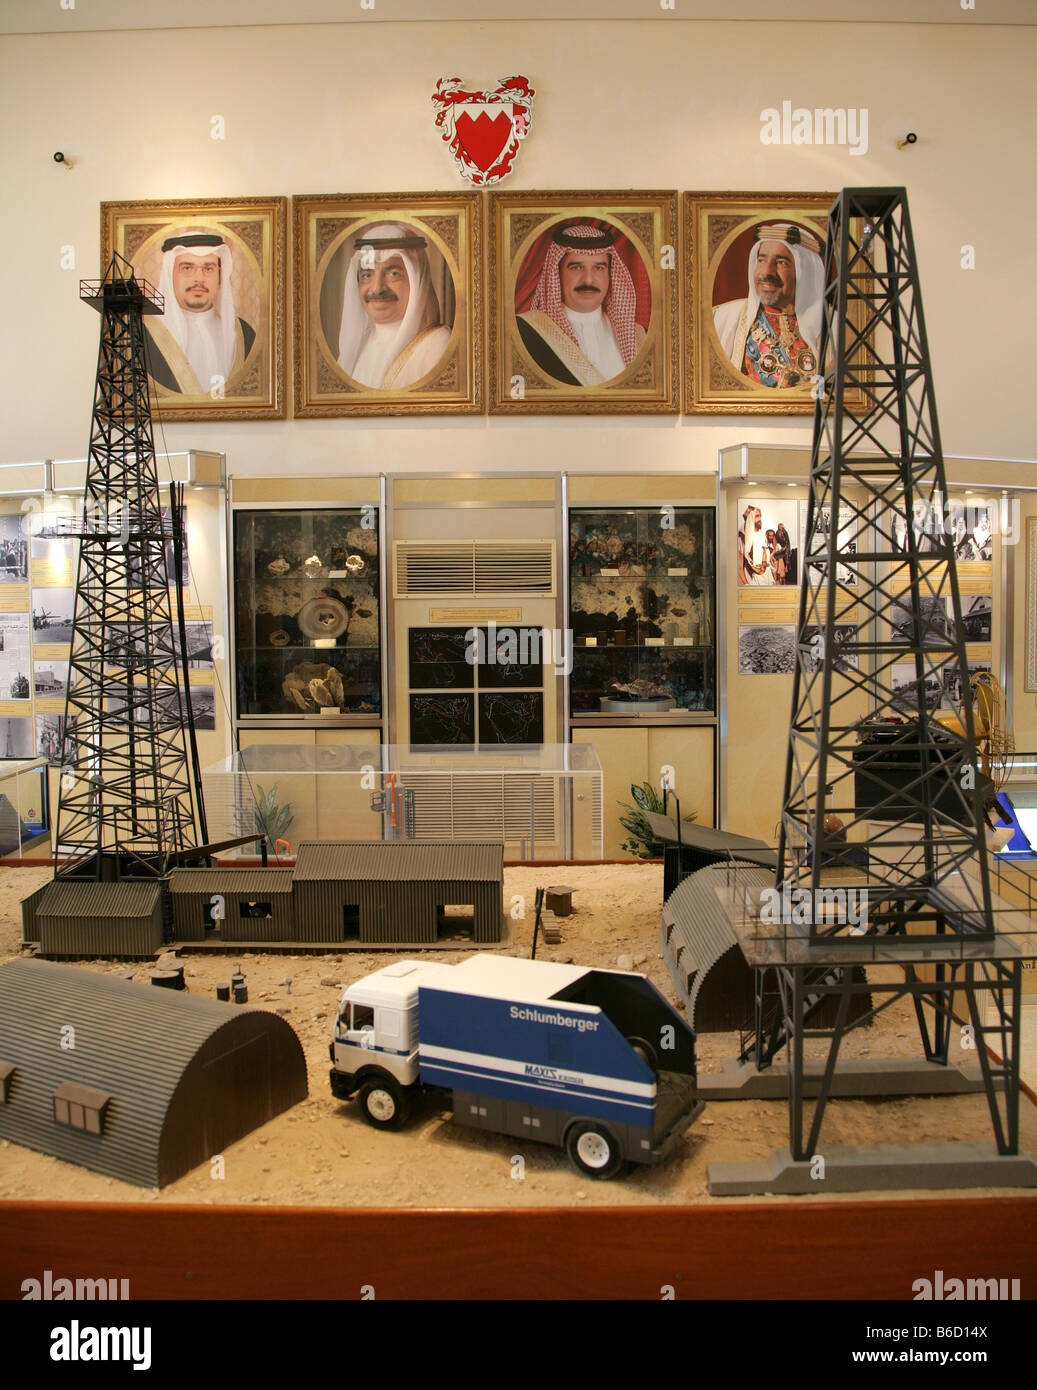 BRN, Bahreïn : pas de puits de pétrole 1, première huile de forage de puits à Bahreïn, aujourd'hui un musée Banque D'Images